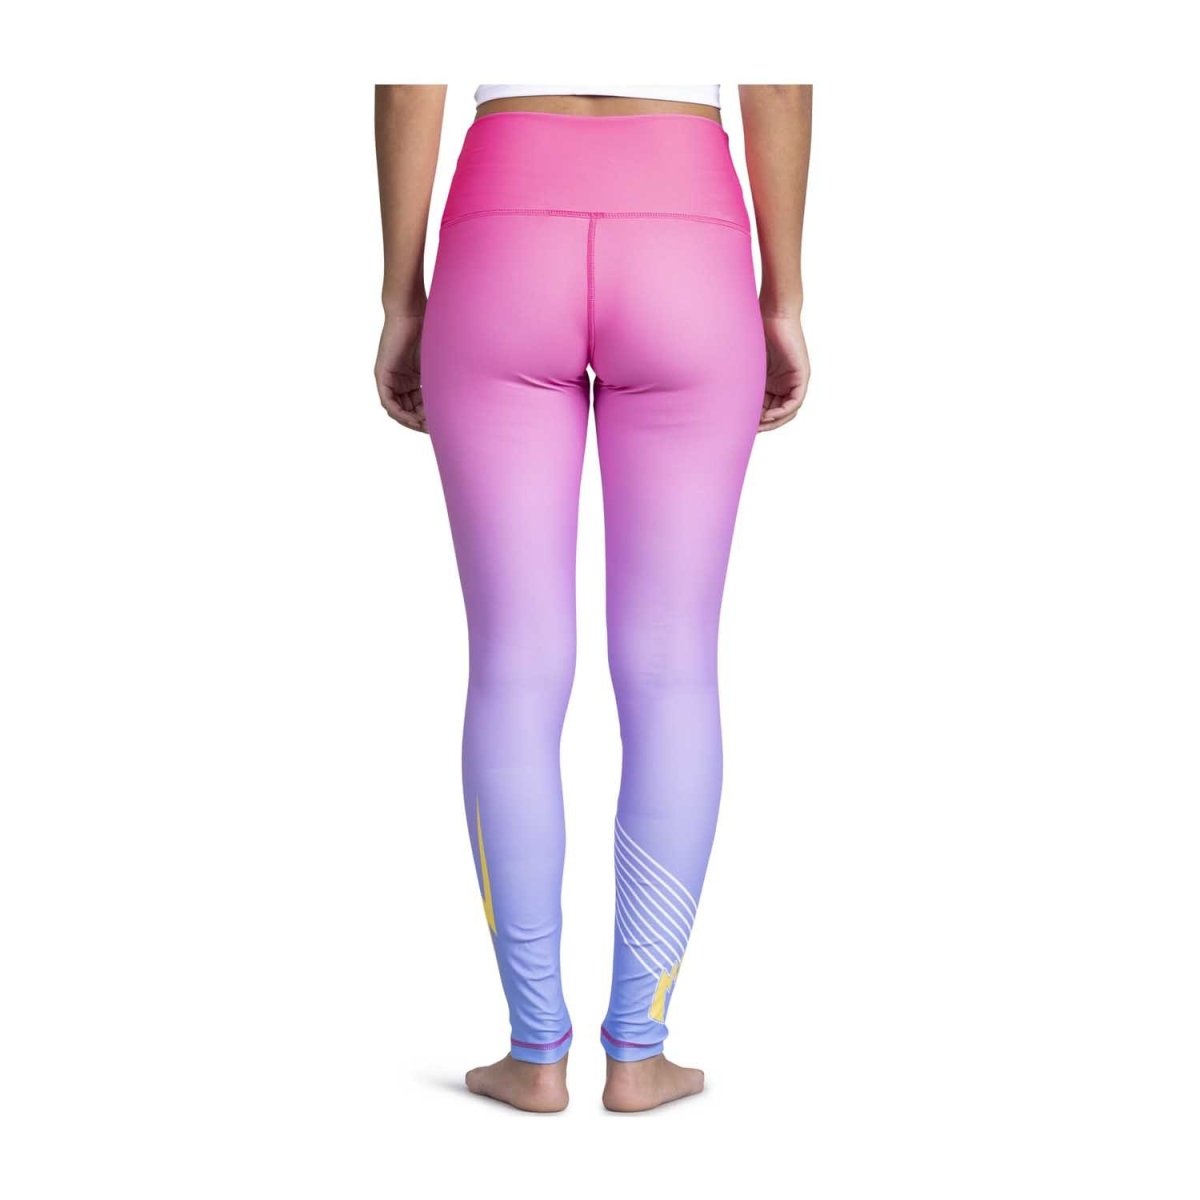 VESPACCI Stretch Patterned Regular Pink Multicolor Leggings Vsp7321pem